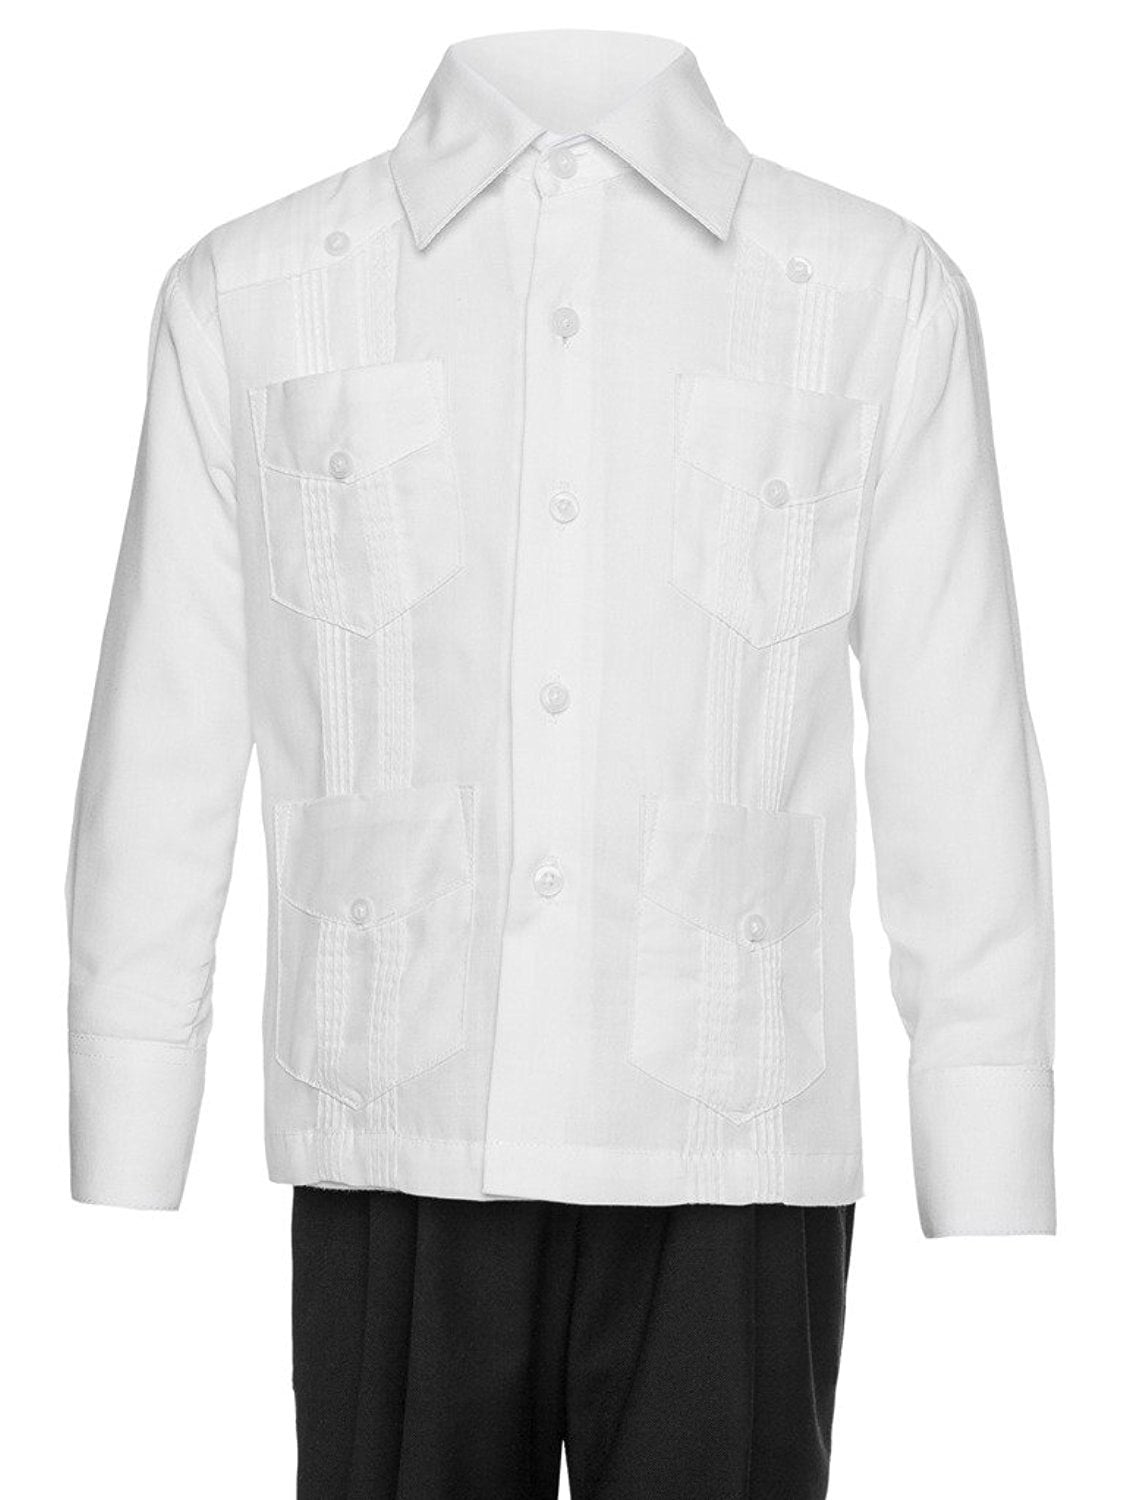 Gentlemens Collection Big Boys Little Boys Long Sleeve/Short Sleeve Linen Look Guayabera Shirt 